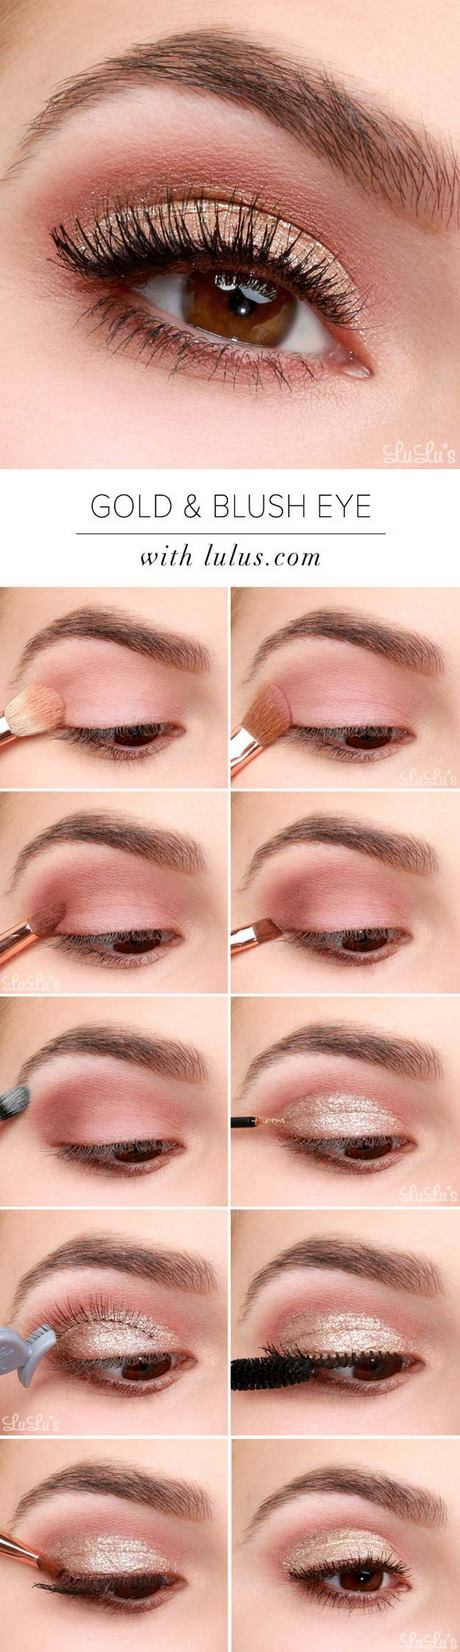 makeup-tips-eyeshadow-13_16 Make-up tips eyeshadow